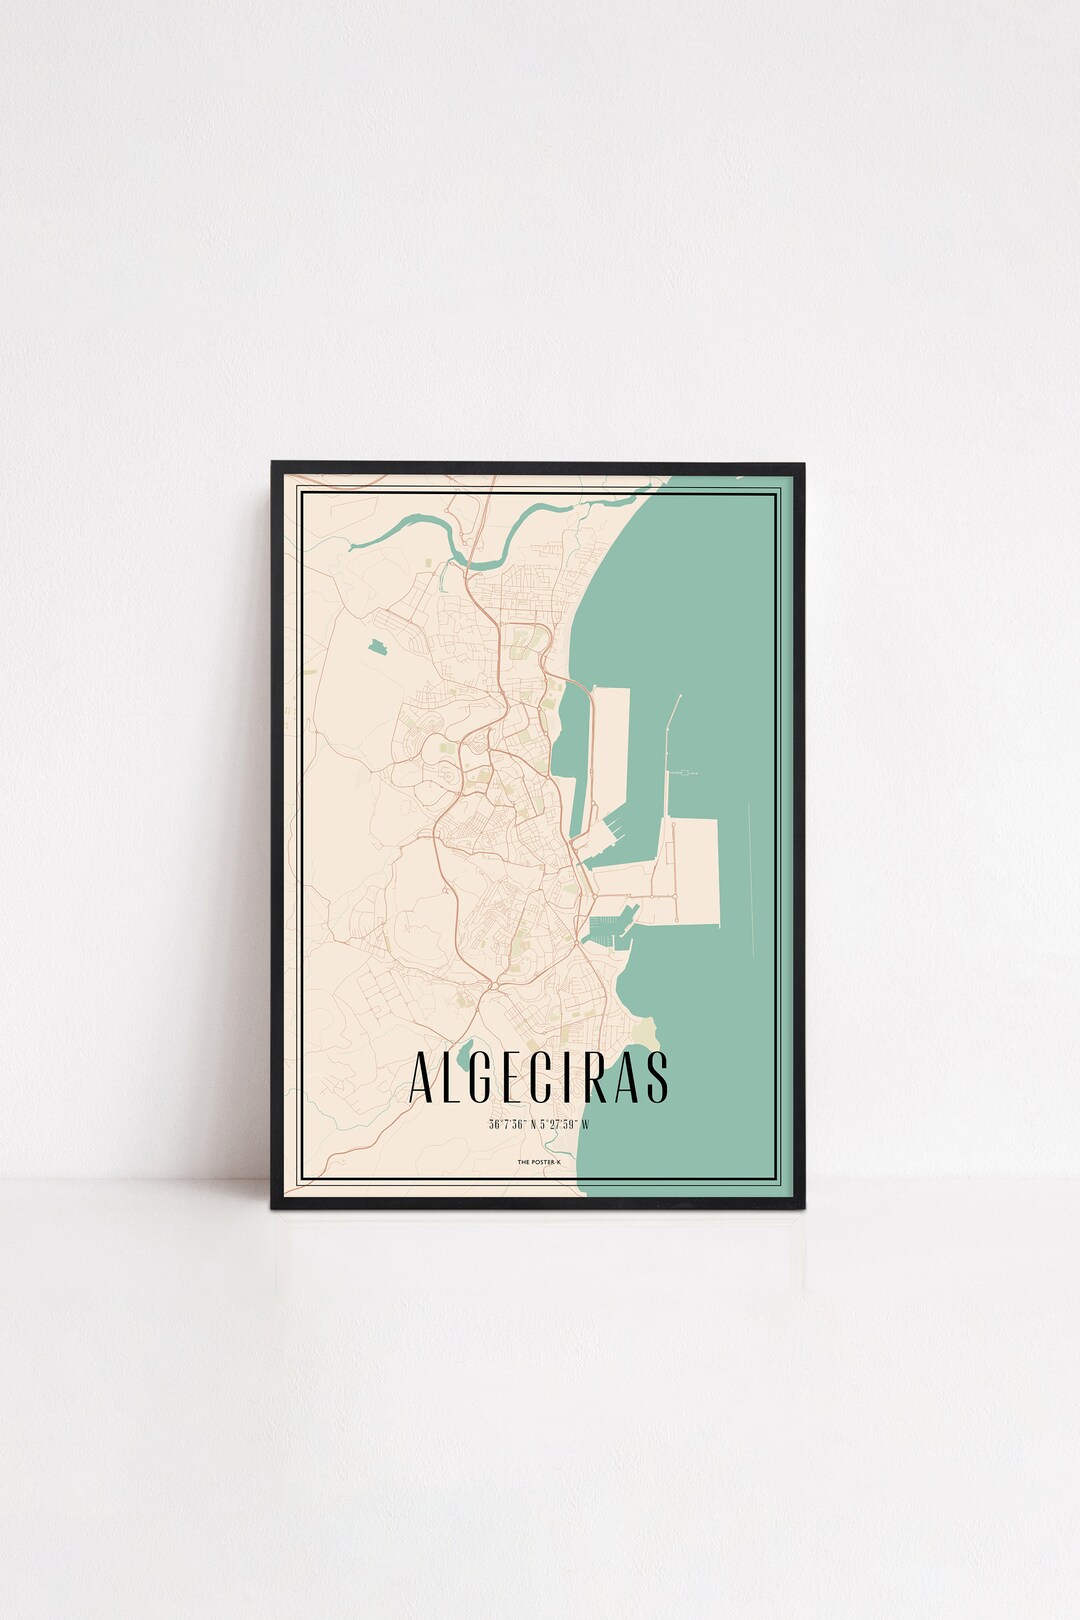 Algeciras Poster Wall Art Print Map City Map Print City Map Art World ...